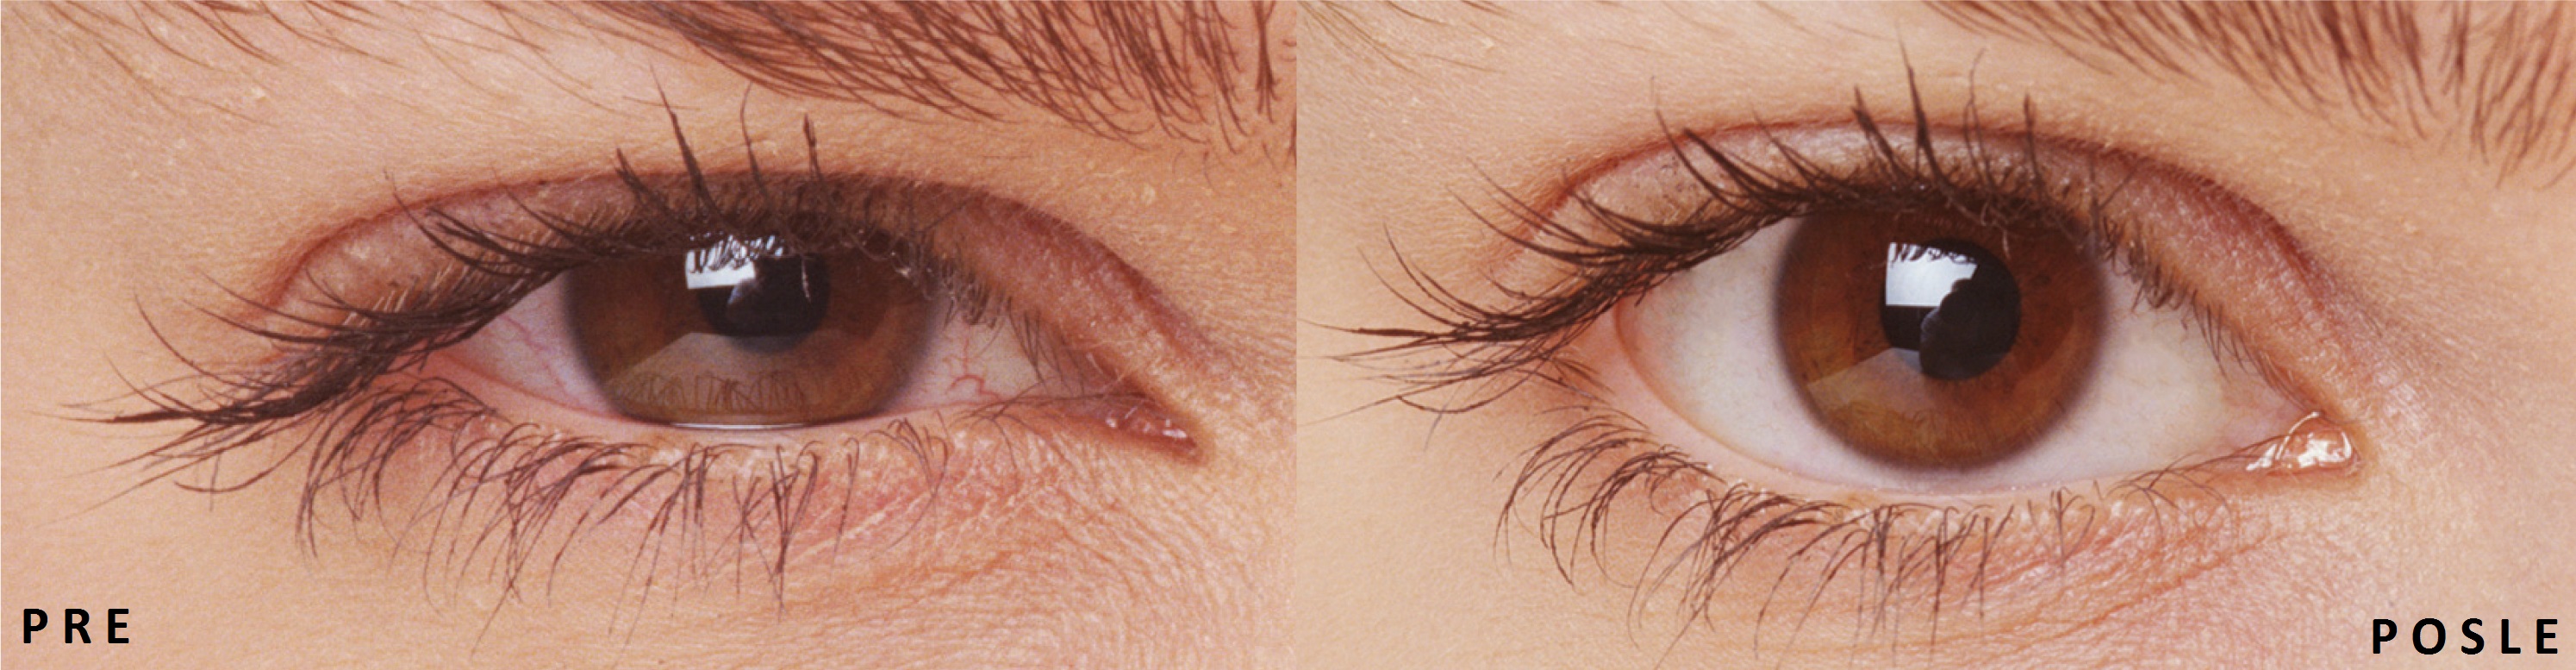 Pre i posle - Iritacija i sindrom suvog oka